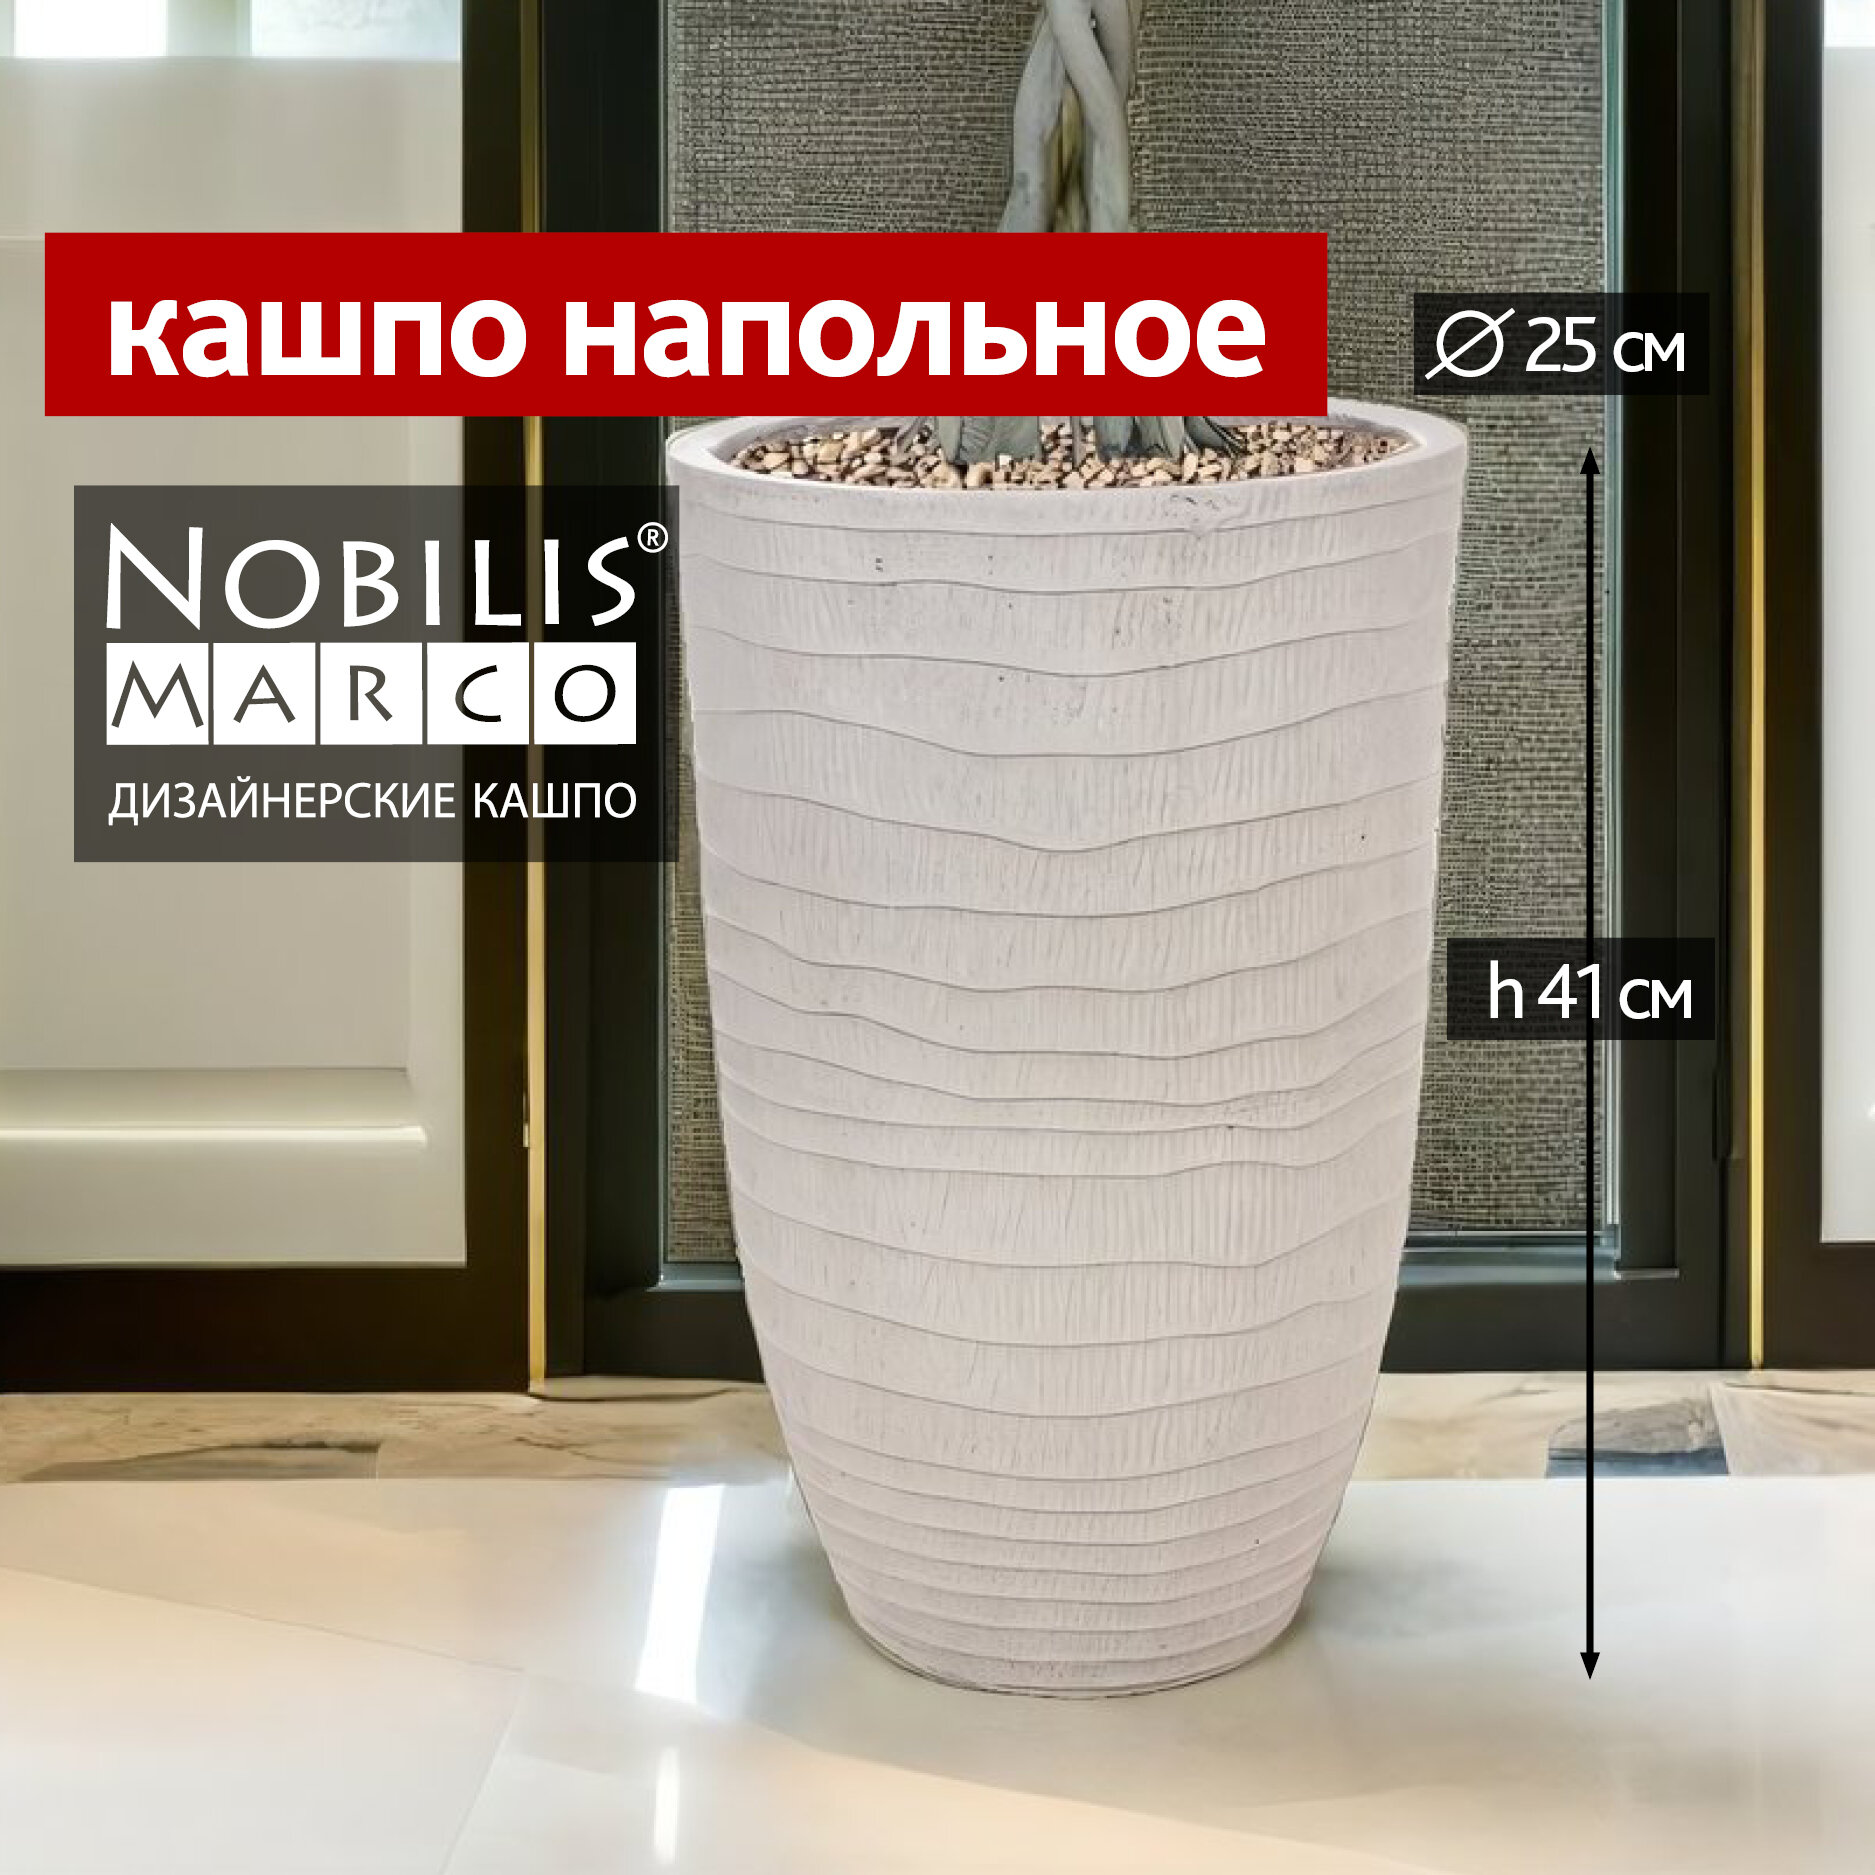 Кашпо для цветов напольное высокое уличное файберклэй Nobilis Marco Waves grey Vase горшок цветочный для декора D25хH41 см